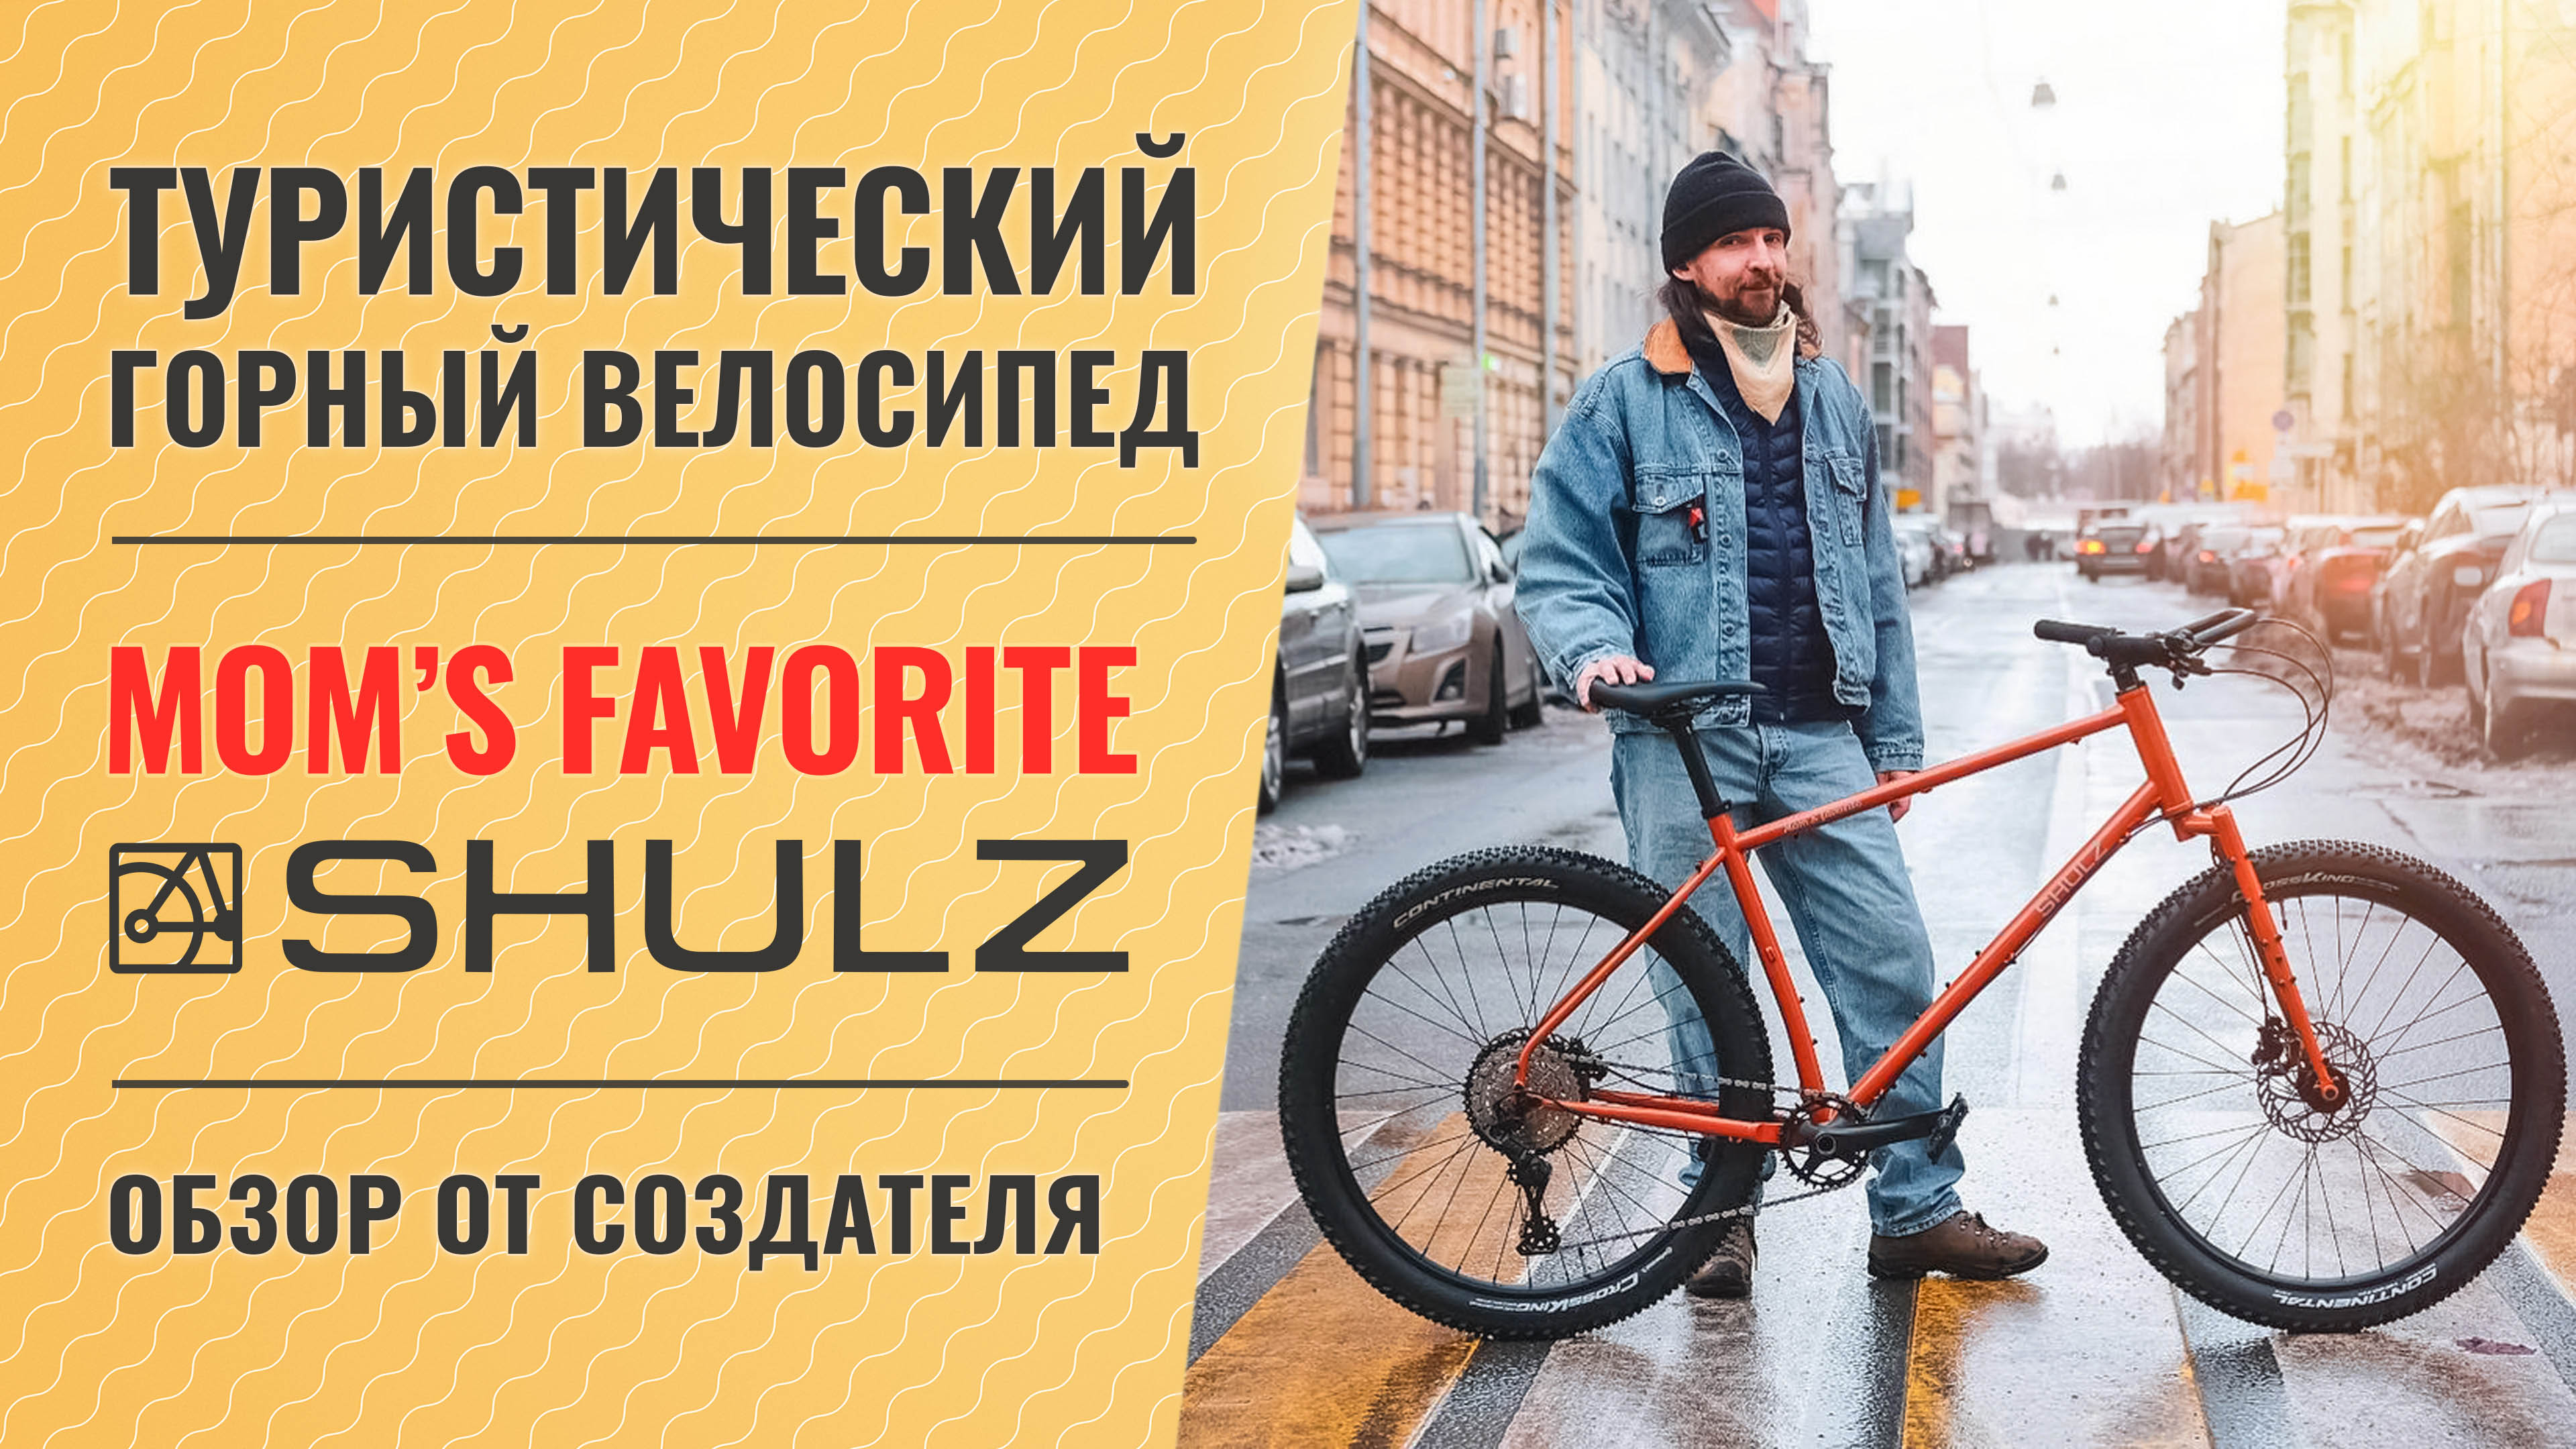 Туристический горный велосипед Shulz Mom’s Favorite | Обзор от создателя байка - Паши Павлова